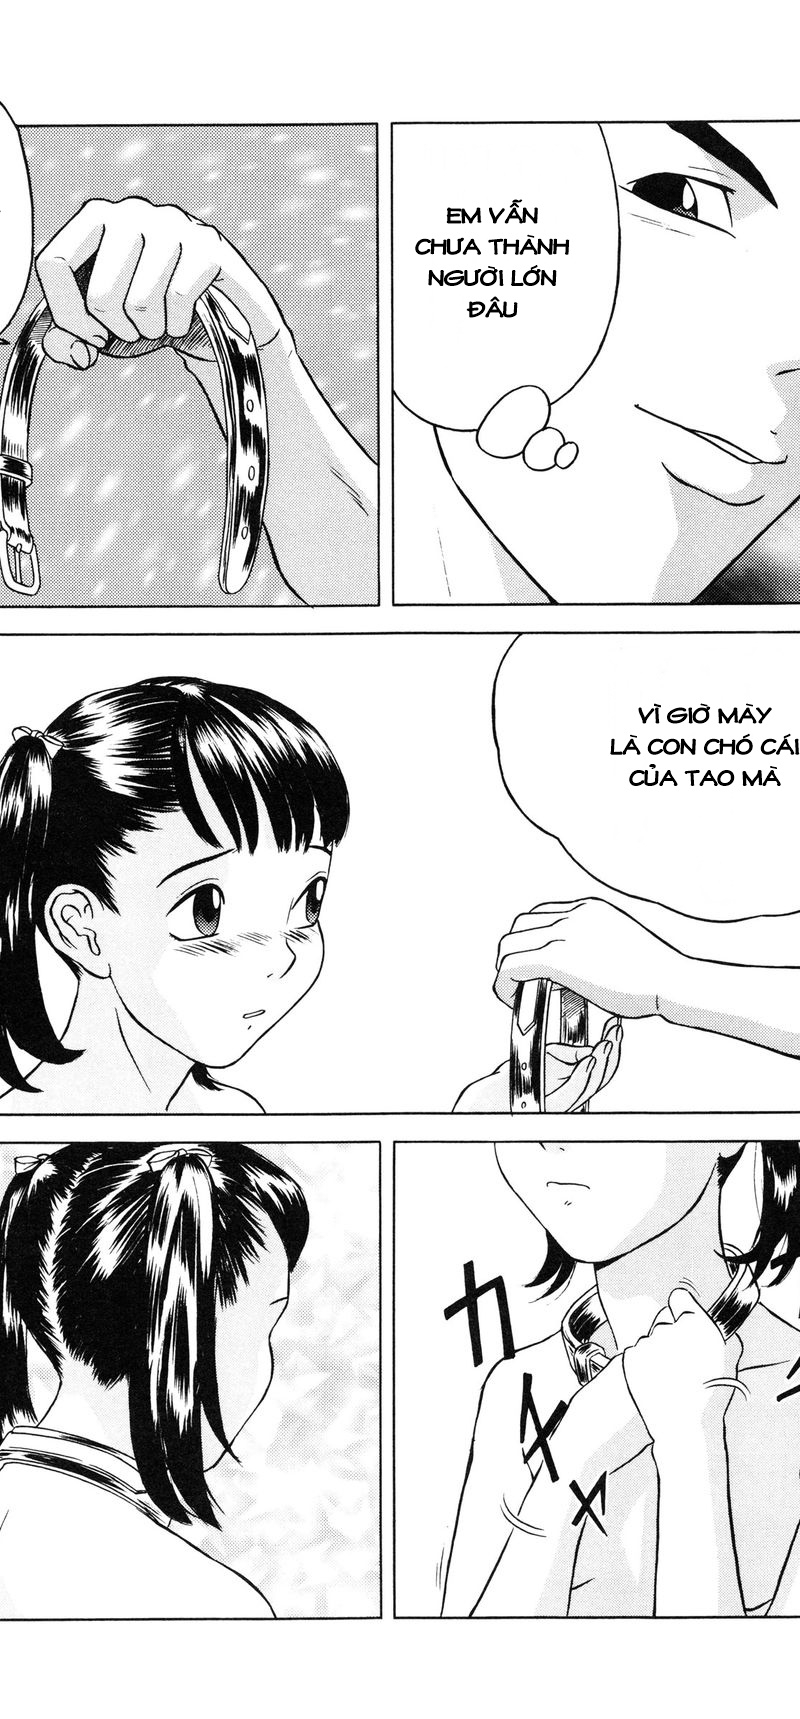 [Loli] Lolita Girls Collection Chapter 3: Jone, Tôi, và Onii-chan - Trang 24